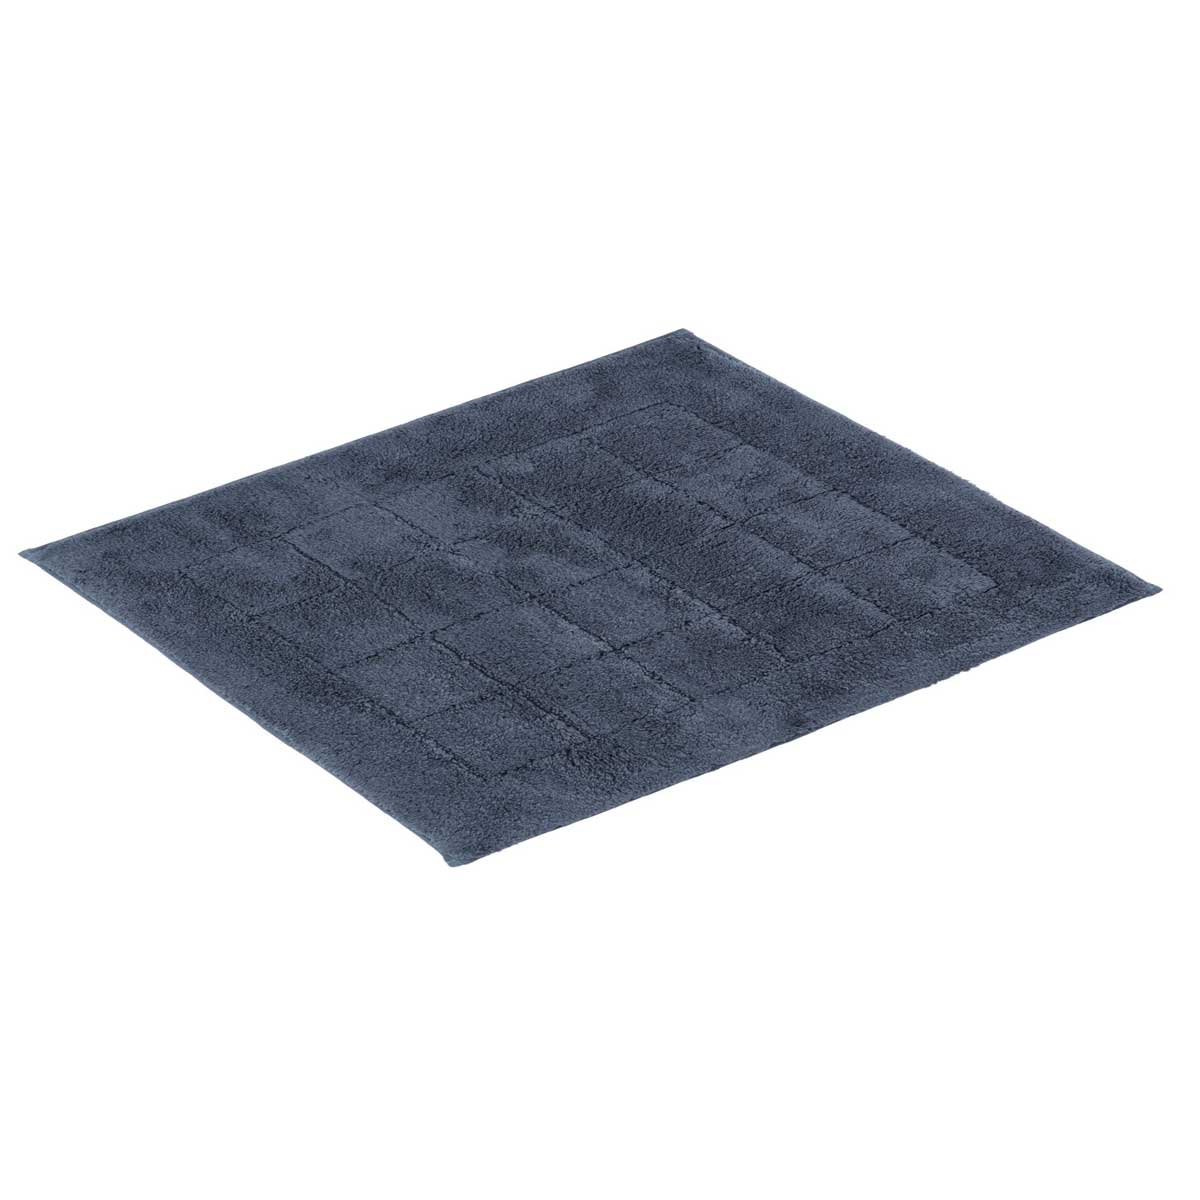 Коврик для ванной комнаты Vossen Exclusive 60x100см, серо-синий коврик для ванной комнаты carl серый 60 90 ridder